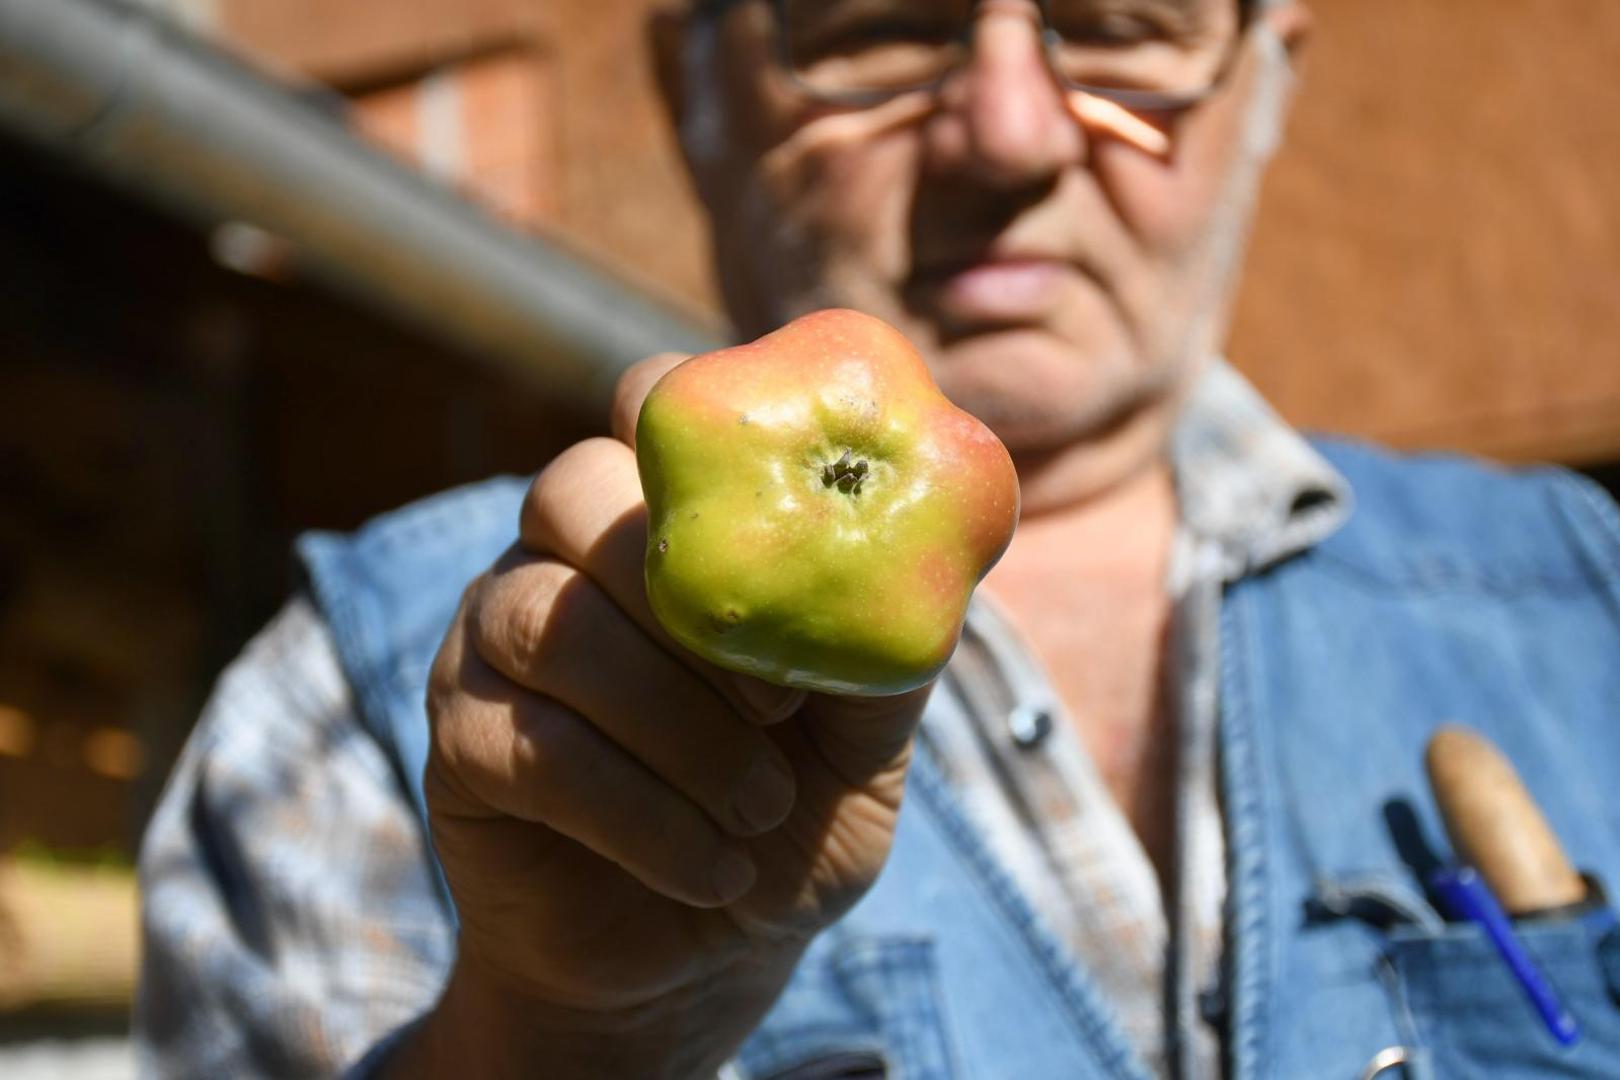 28.10.2020., Cvetkovec - Pavle Kovacic uzgaja i skuplja starinske domace sorte jabuka kojih u svom vocnjaku ima preko 800 vrsta. Jedna od posebnijih jabuka je Adamova zvijezda.
Photo:Damir Spehar/PIXSELL